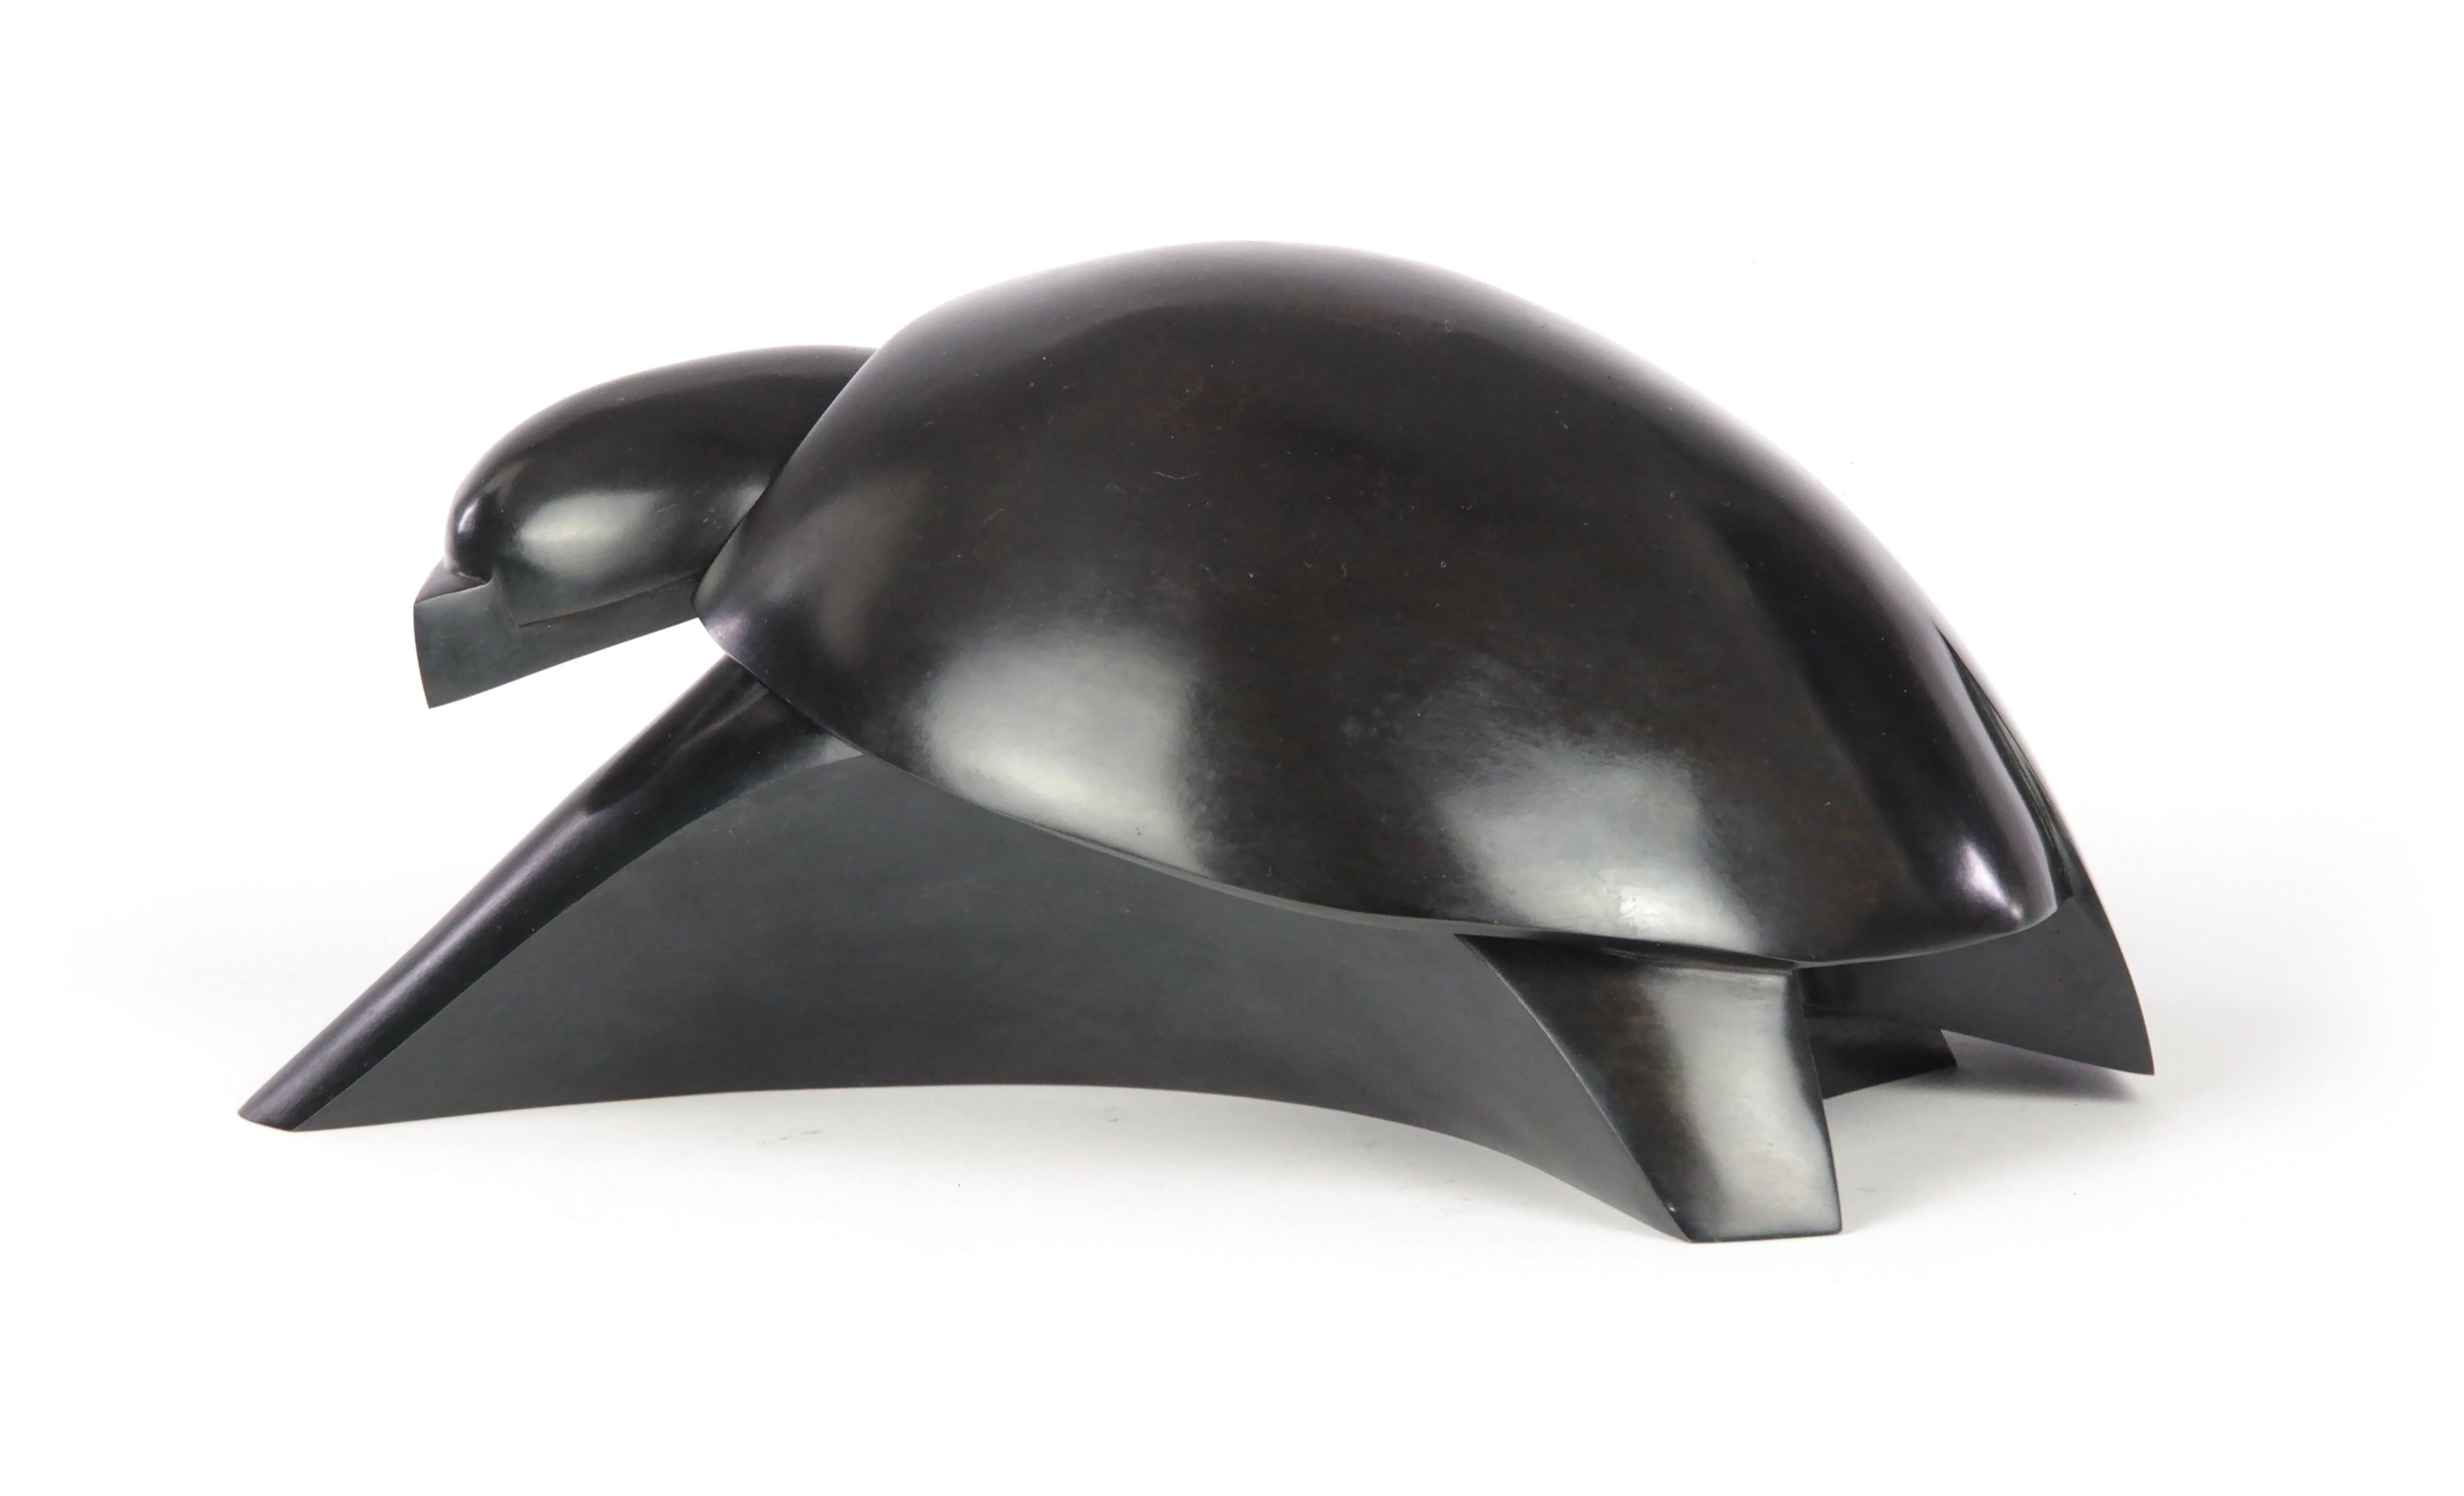 Takioka ist eine Skulptur des französischen zeitgenössischen Künstlers Jacques Owczarek.
Diese Schildkröte aus Bronze nimmt durch eine Reihe von Linien, Kanten und Kurven Gestalt an. 
Jacques Owczarek entdeckte die Bildhauerei im Alter von 30 Jahren